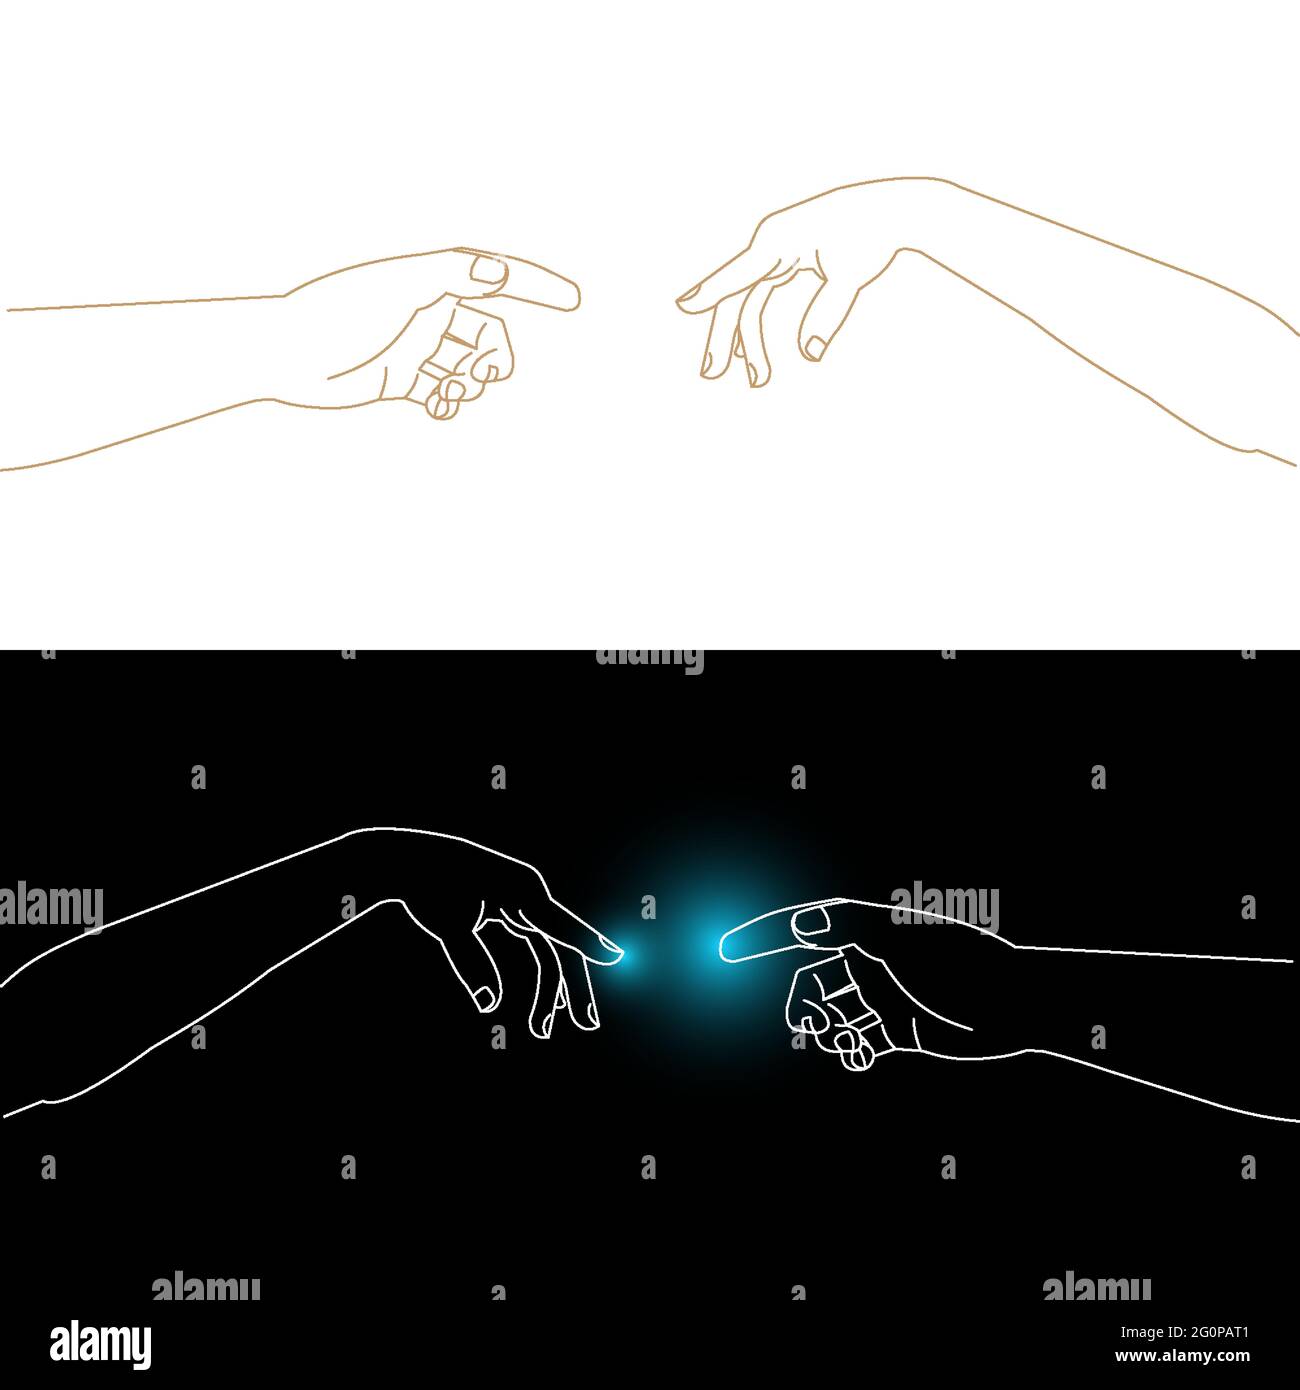 Michelangelos Adamo e Dio interpretazione delle mani, indice dita che si toccano, uomo e donna che collegano le mani, vettore illustrazione di contorno Illustrazione Vettoriale